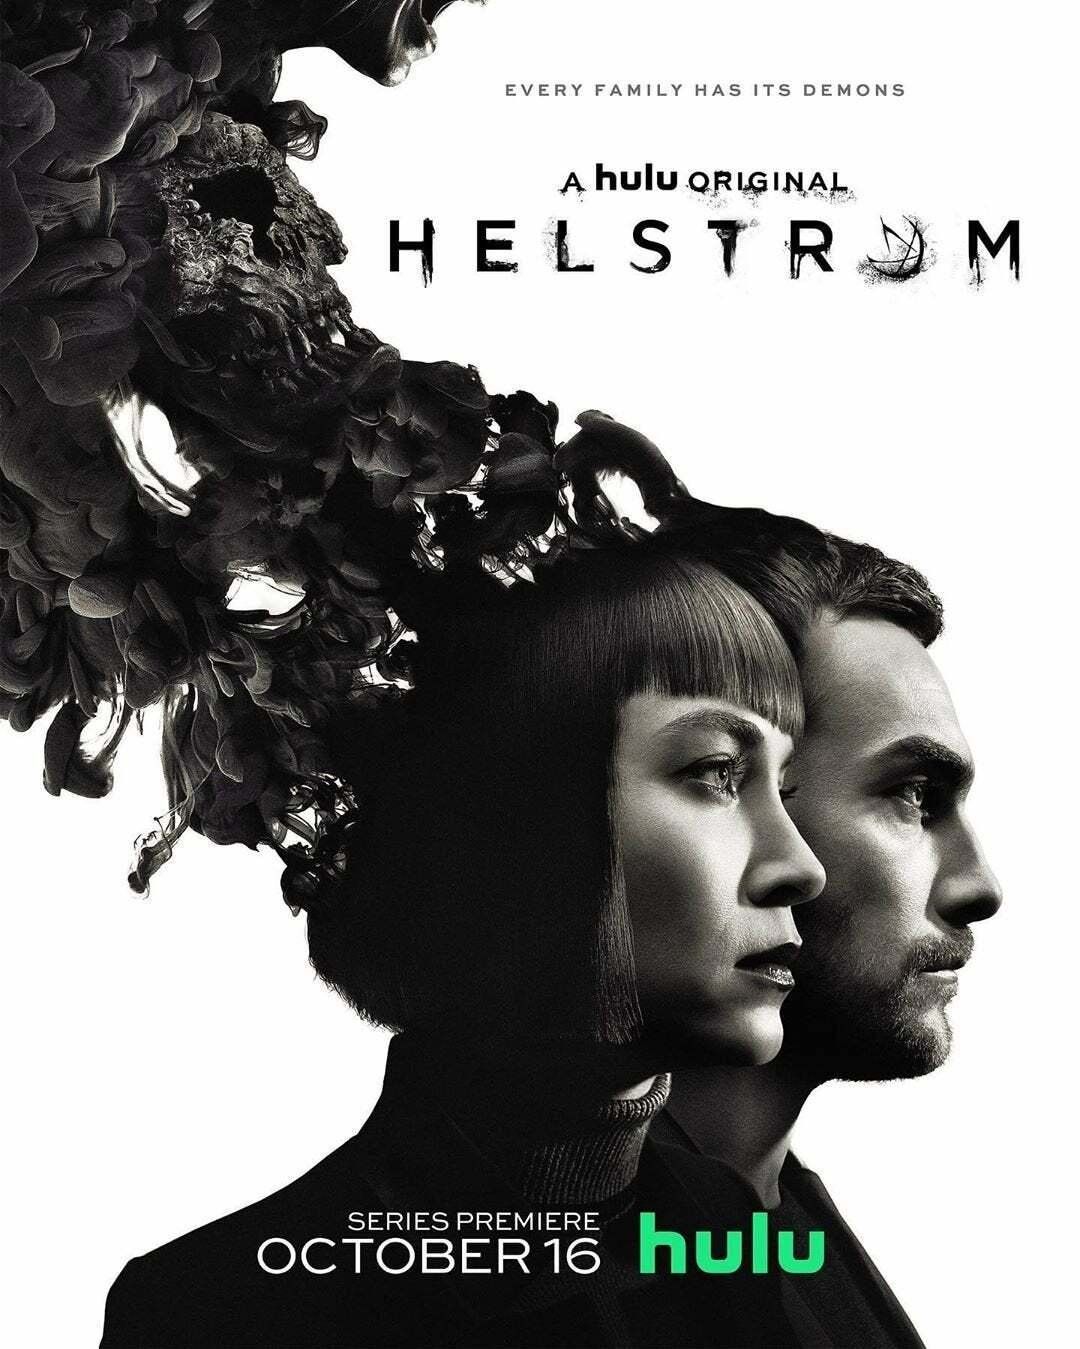 I due protagonisti di Helstrom visti di profilo